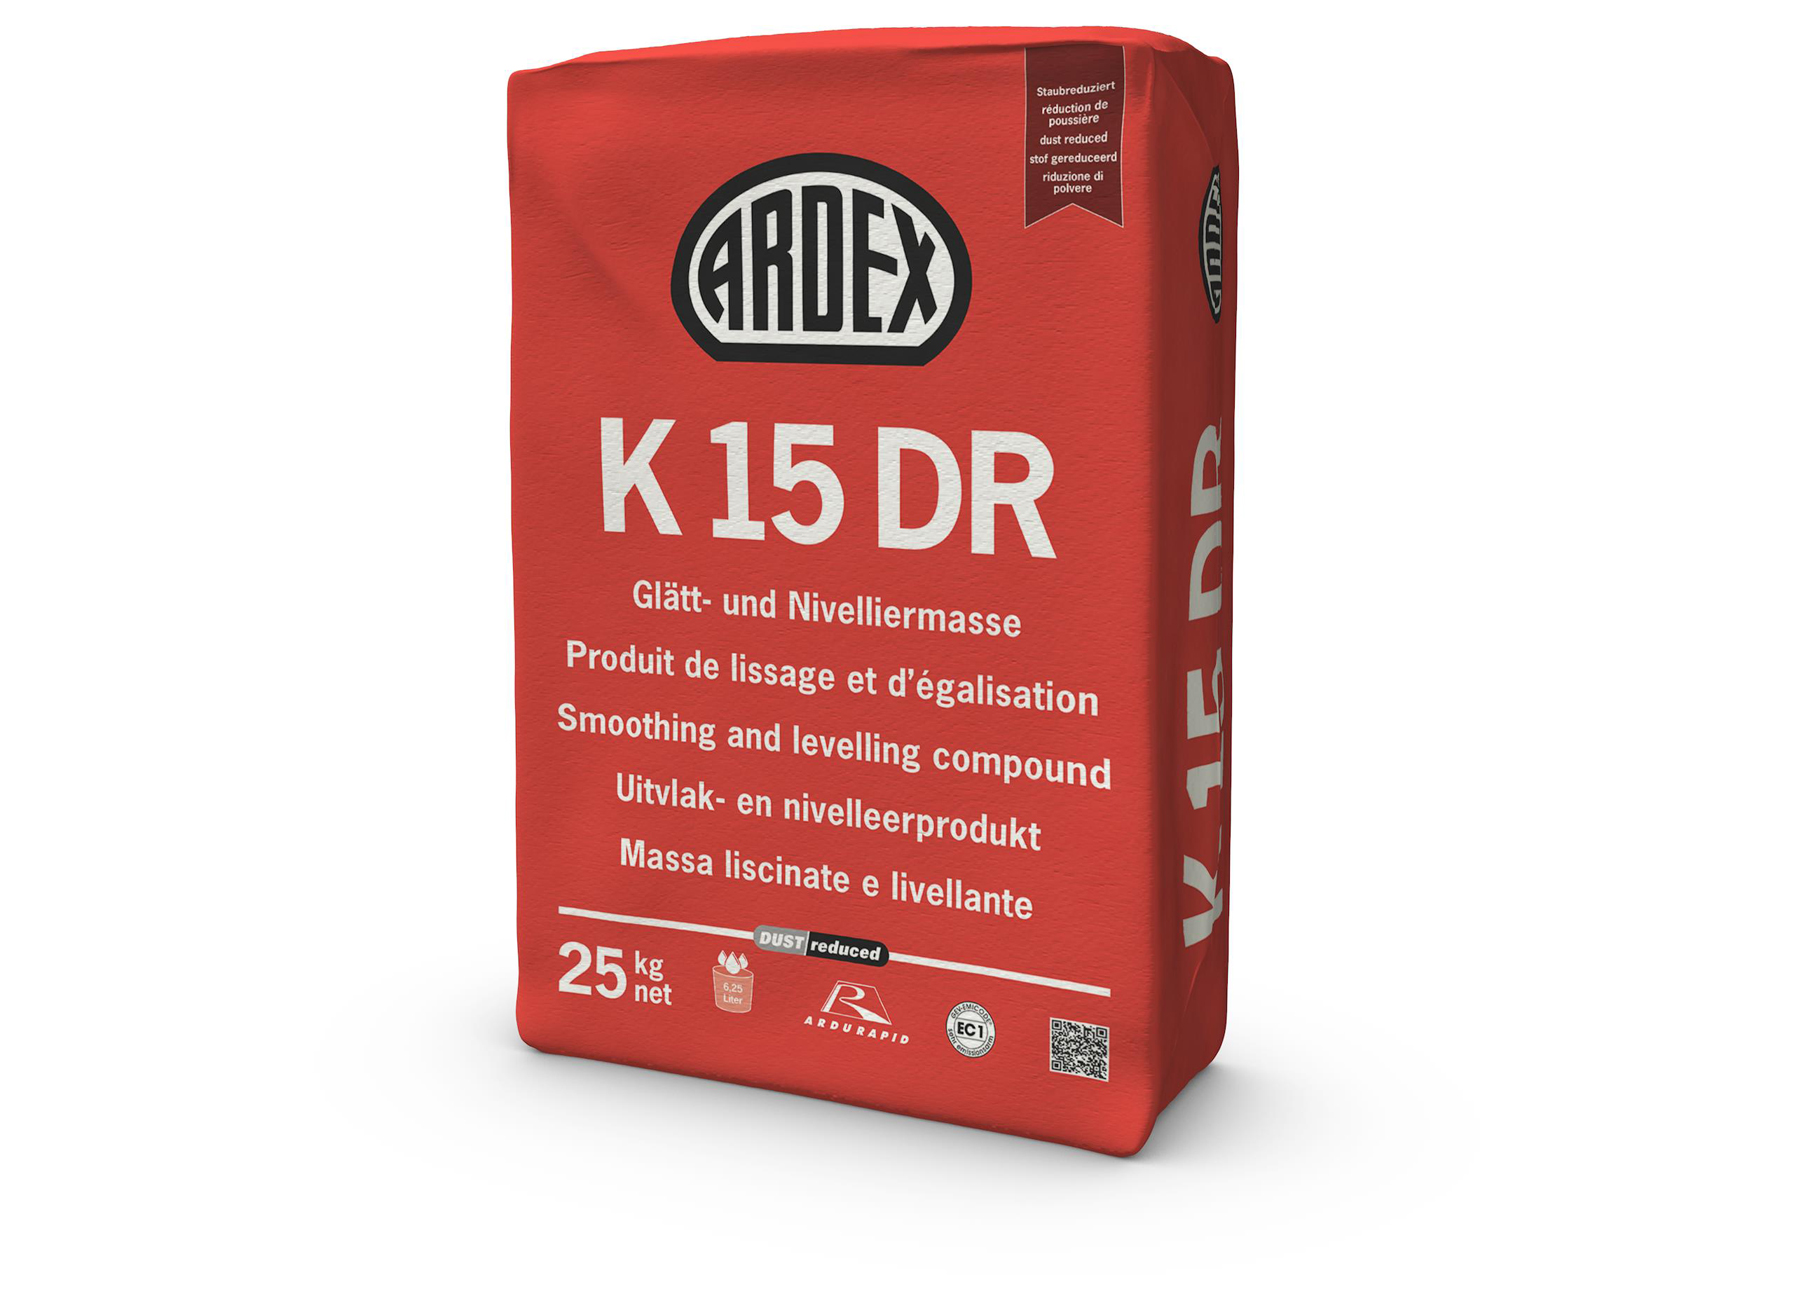 ARDEX K15 DR (Dust Reduced) ENDUIT DE RAGREAGE ET DE NIVELLEMENT 25KG